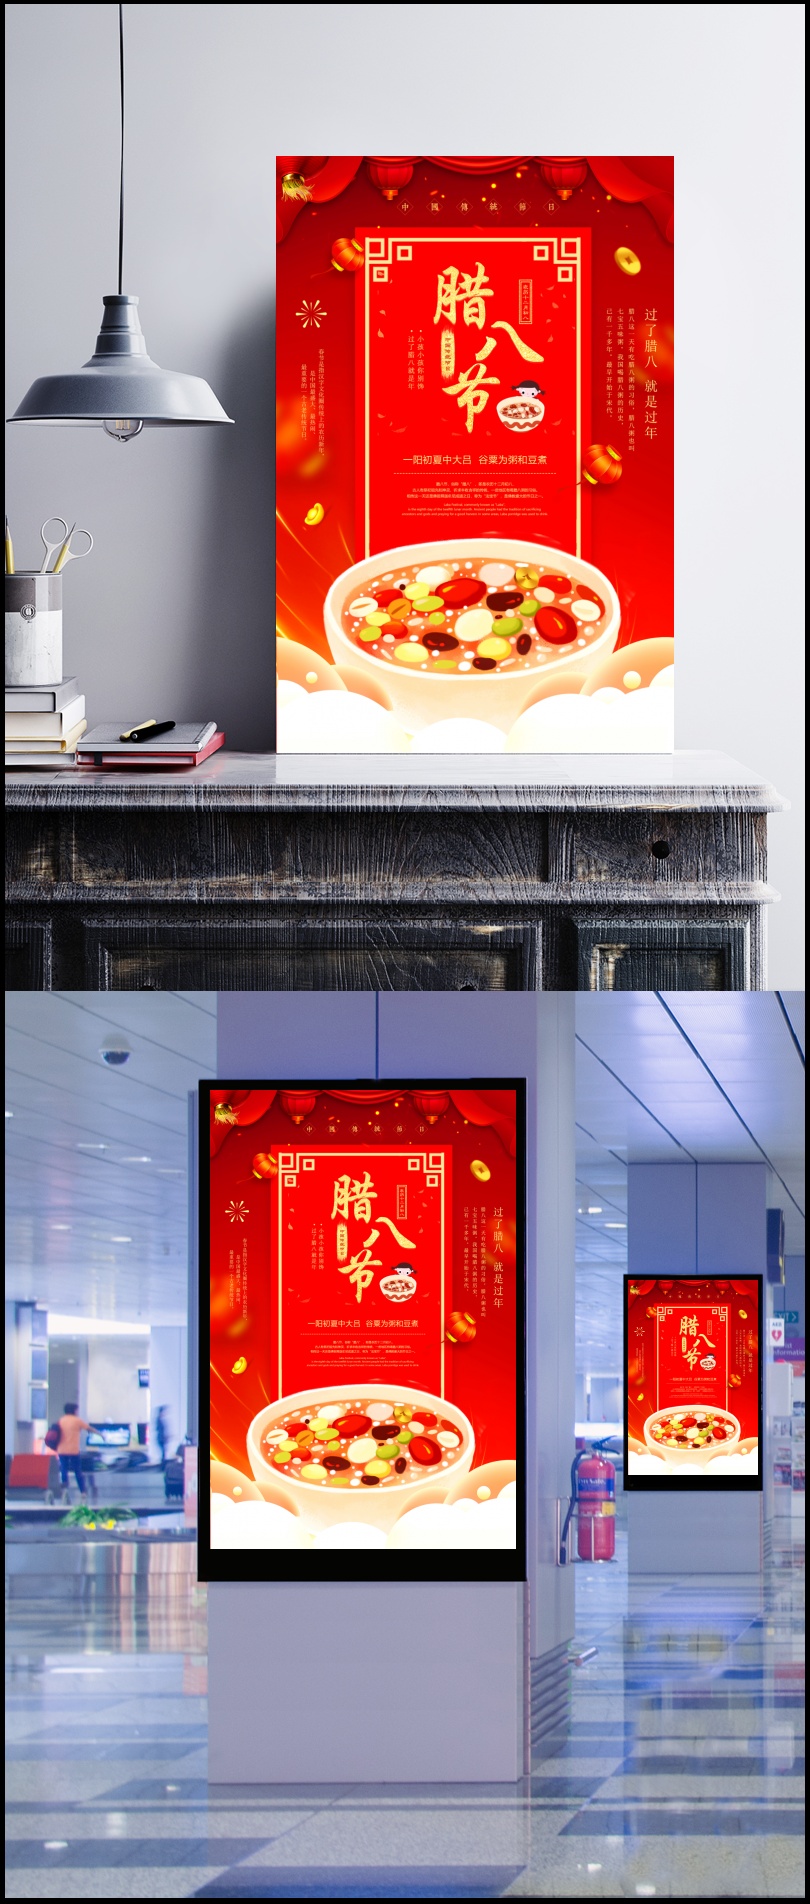 中国传统节日之腊八红色主题海报